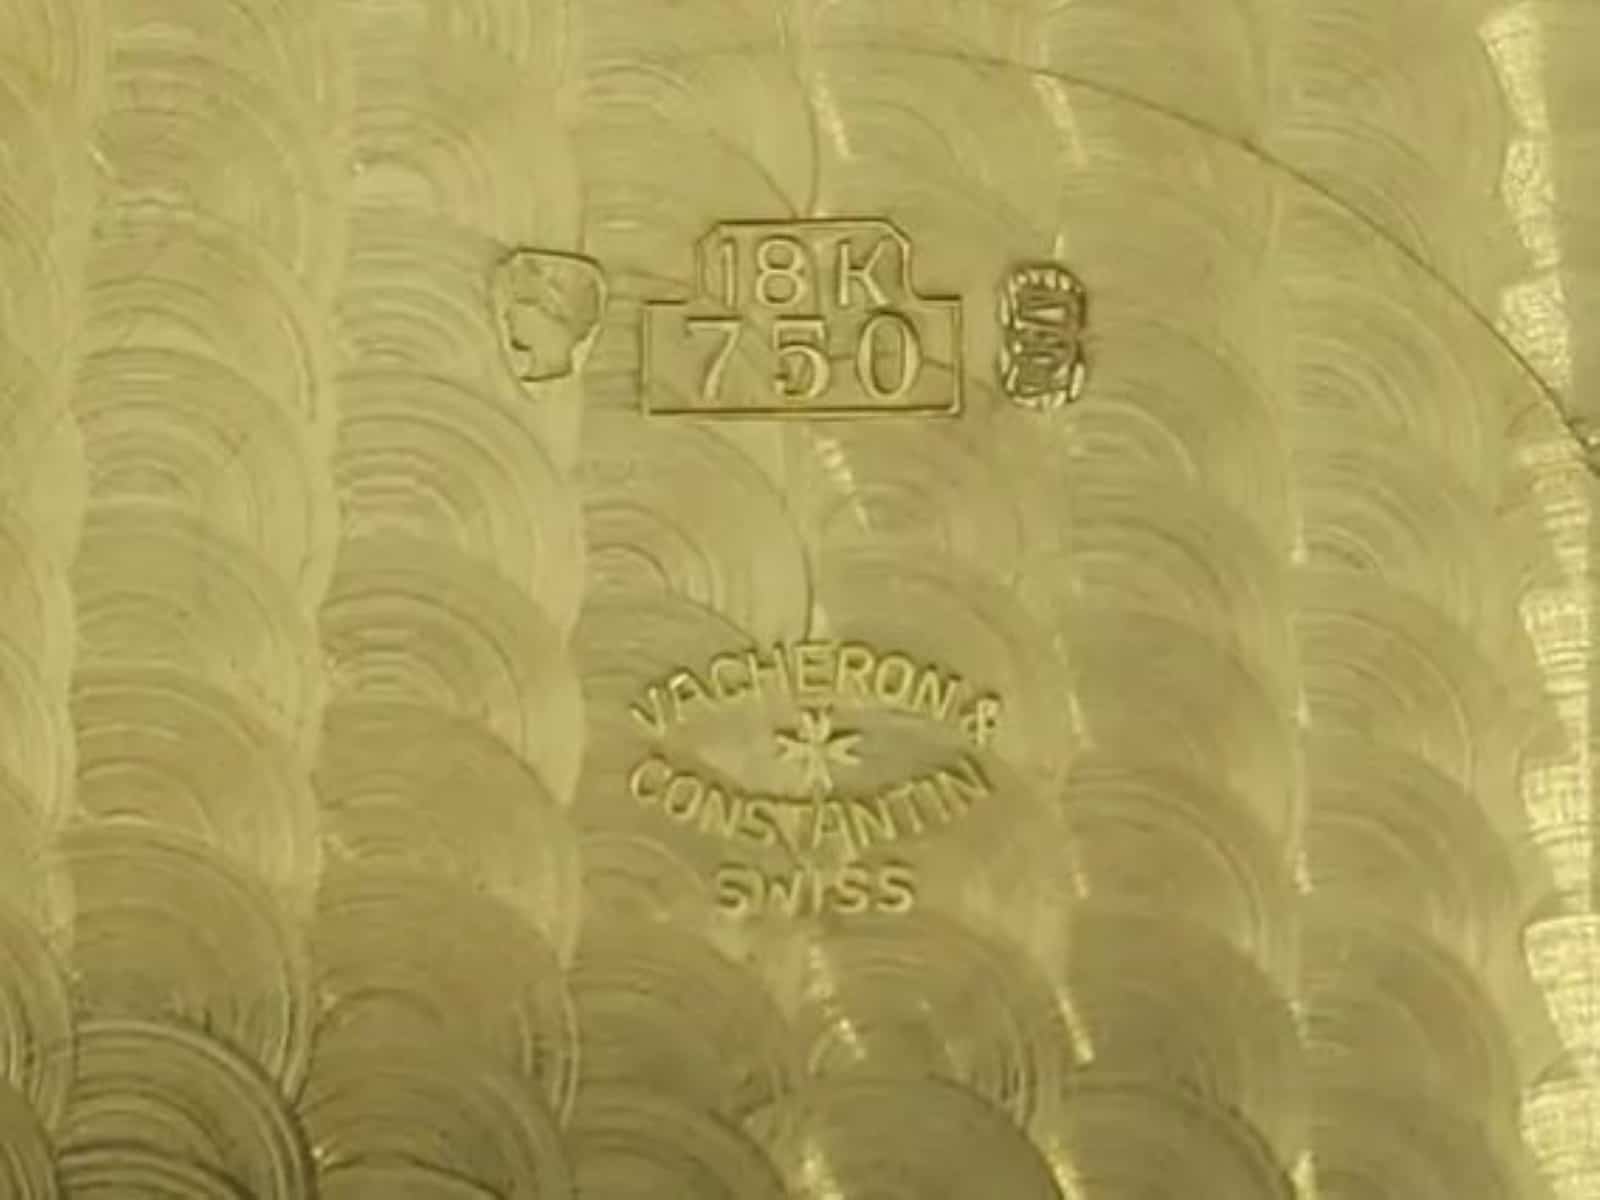 18 Karat Golduhr von Vacheron Constantin mit Großer Helvetia und Internationalem Prägestempel für Edelmetalle